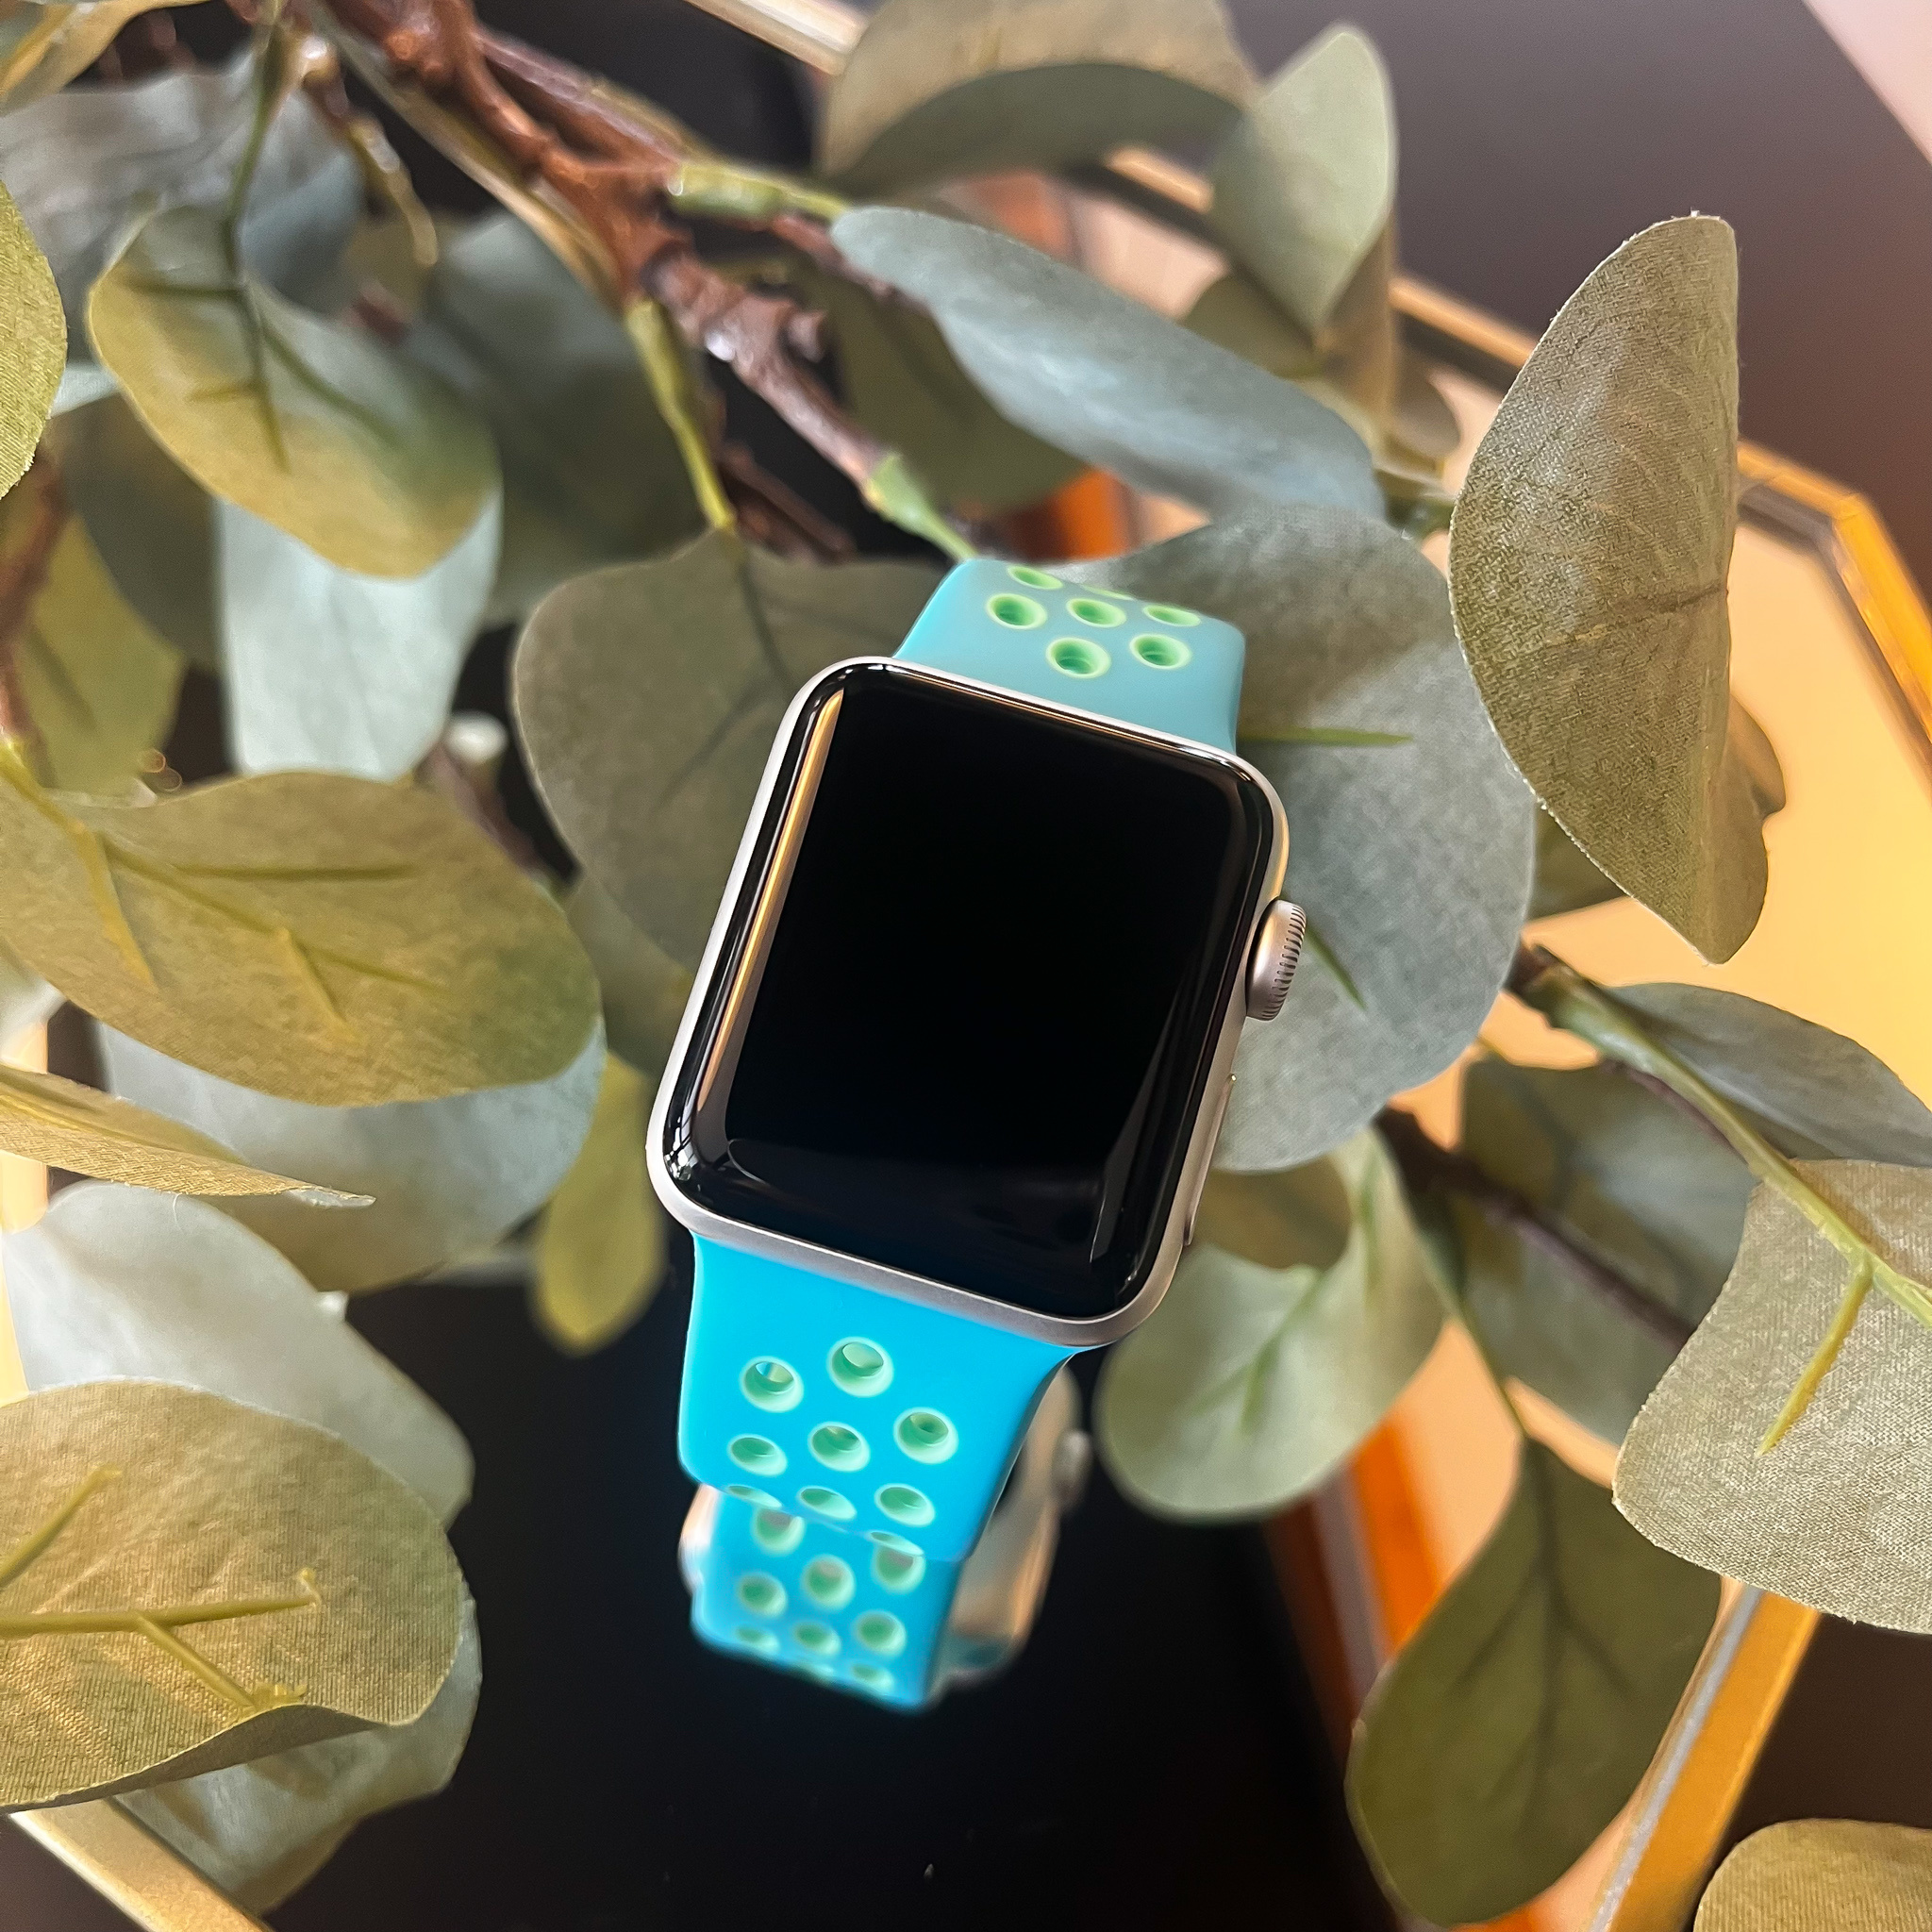  Apple Watch dupla sport pánt - klór kék zöld izzó